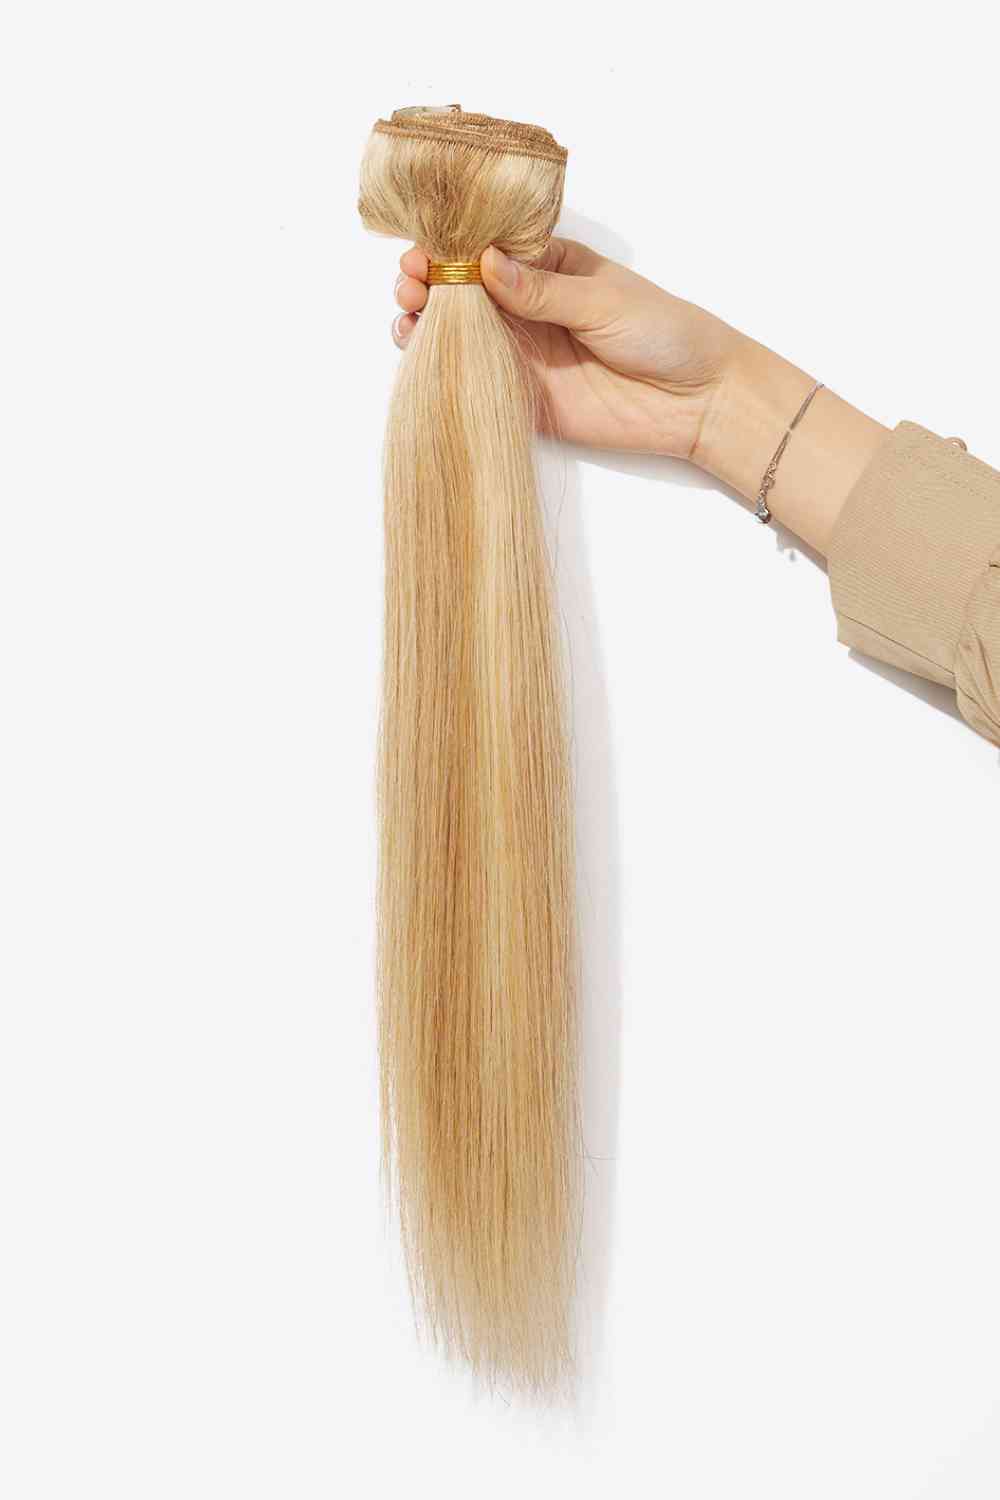 18" 100g #27/613 Extensiones de cabello con clip Cabello virgen humano